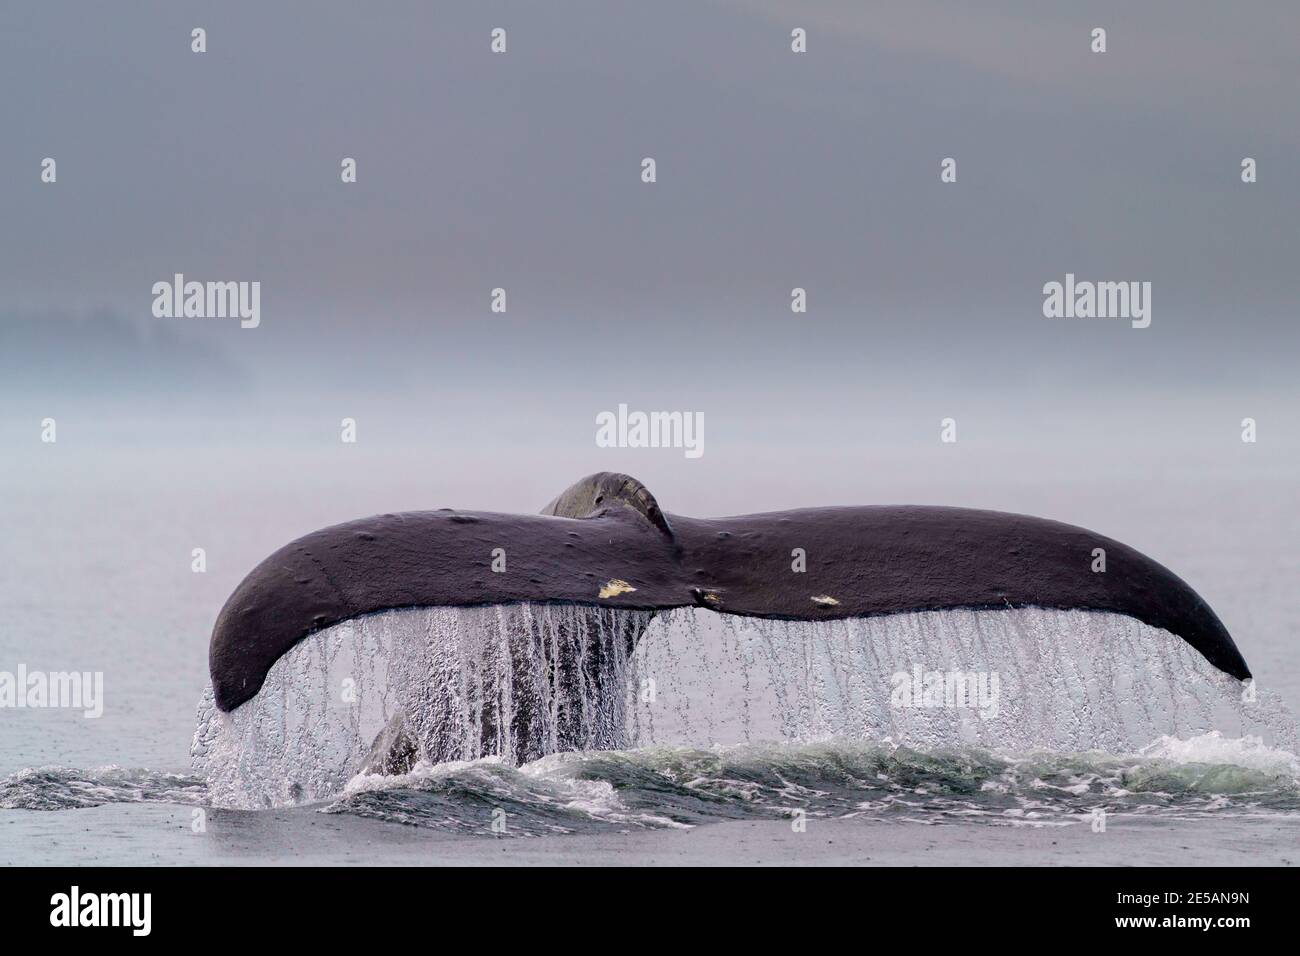 La baleine à bosse (Megaptera novaaeangliae) a nommé Domino levant sa queue-fluke avant de partir pour une plongée plus profonde, lors d'une journée de pluie au large de l'île Malcolm près de la Th Banque D'Images